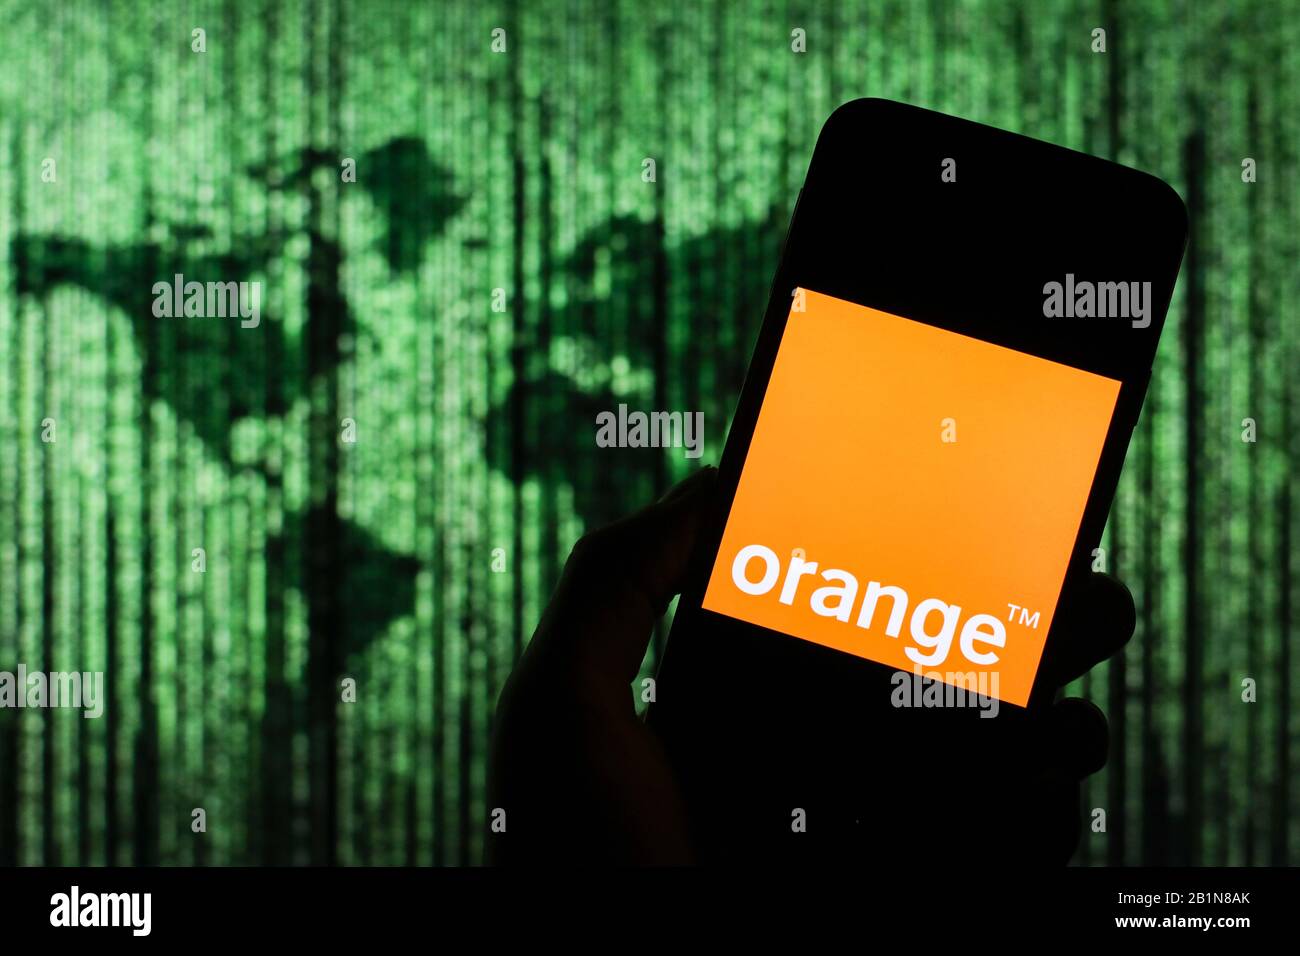 Orangefarbenes Firmenlogo für Telekommunikationsunternehmen, das auf dem Smartphone-Bildschirm angezeigt wird, mit einer Matrix-ähnlichen Weltkarte, die im Hintergrund verschwommen zu sehen ist Stockfoto